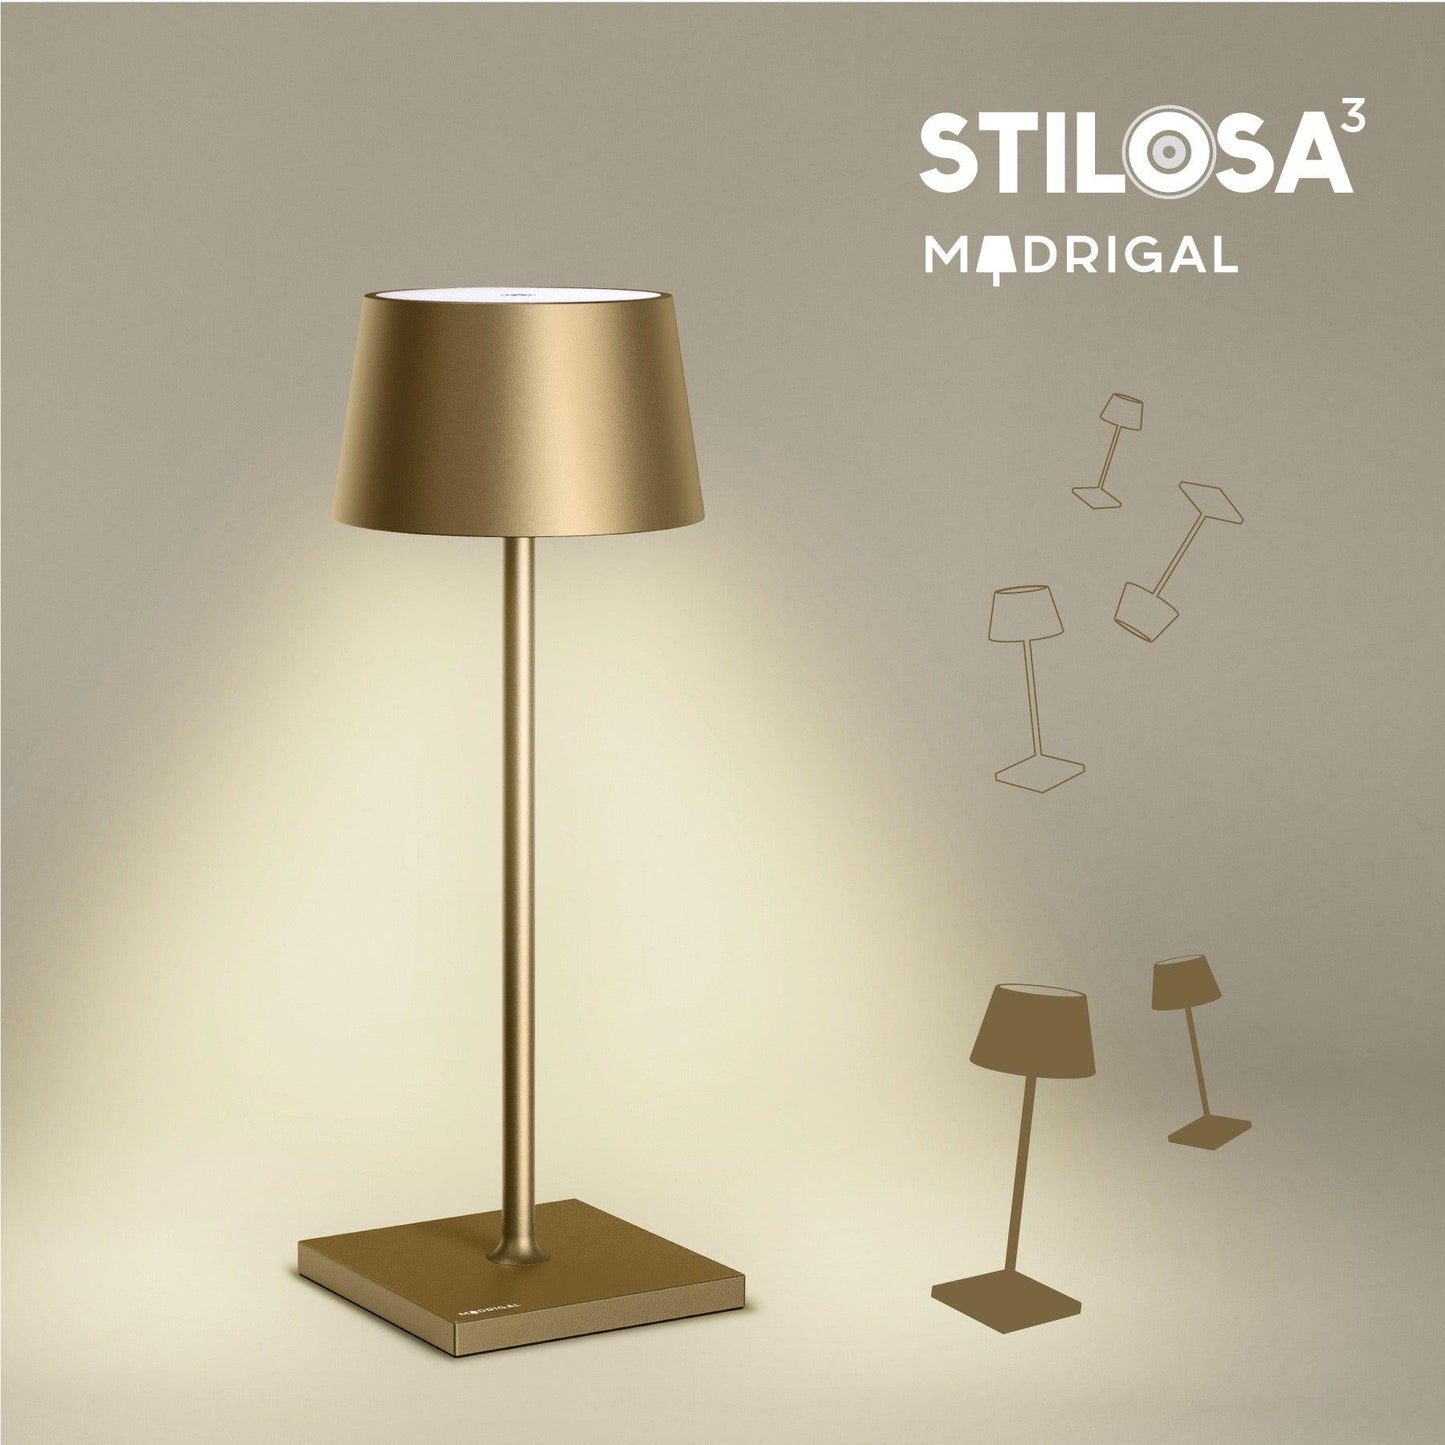 Stilosa - Gold Titanium - Madrigal